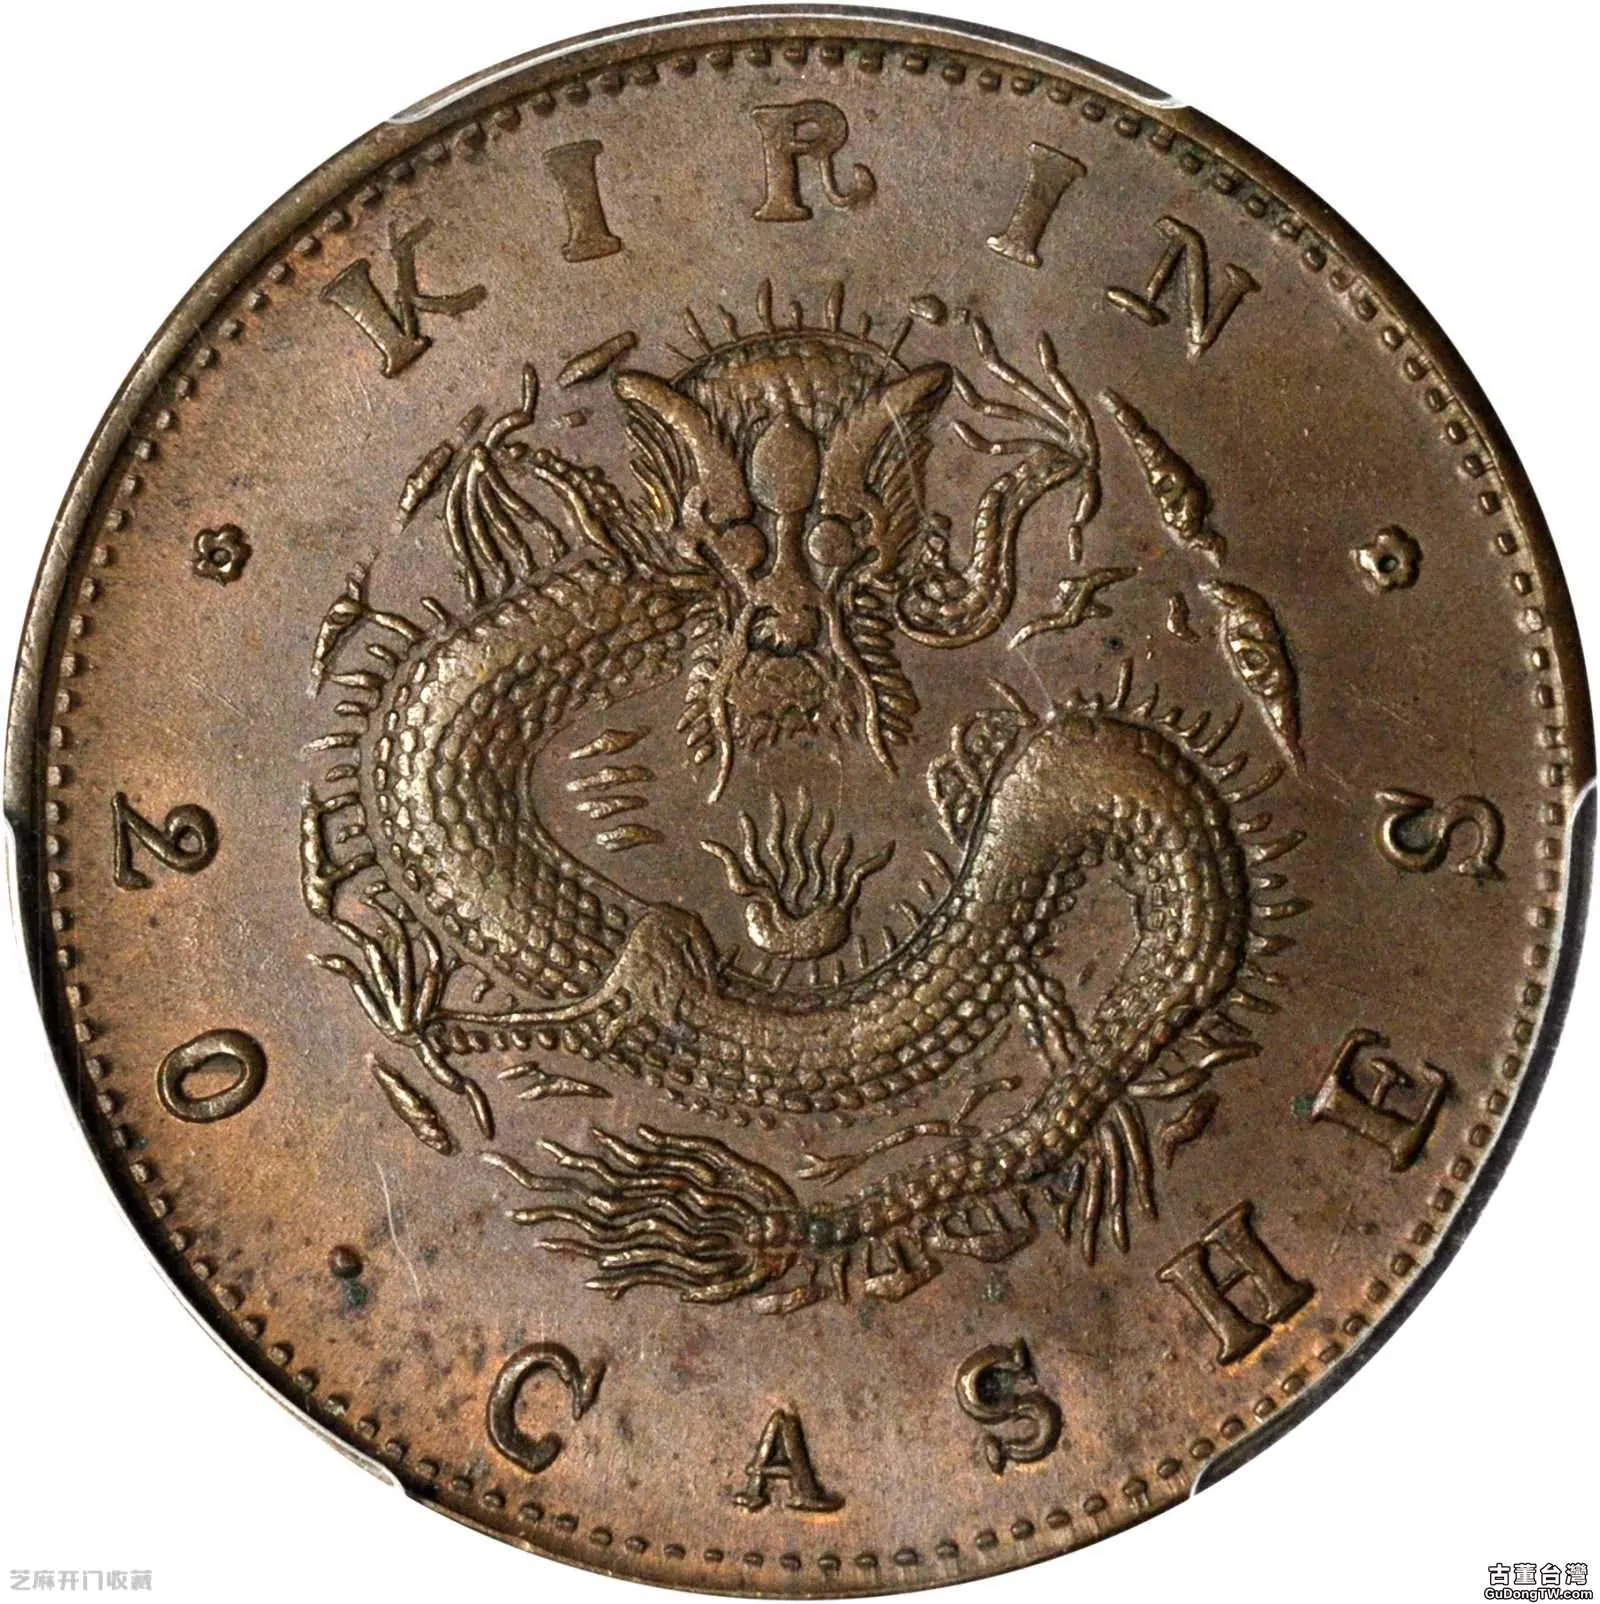 吉林省造銅幣當制錢二十箇值錢嗎